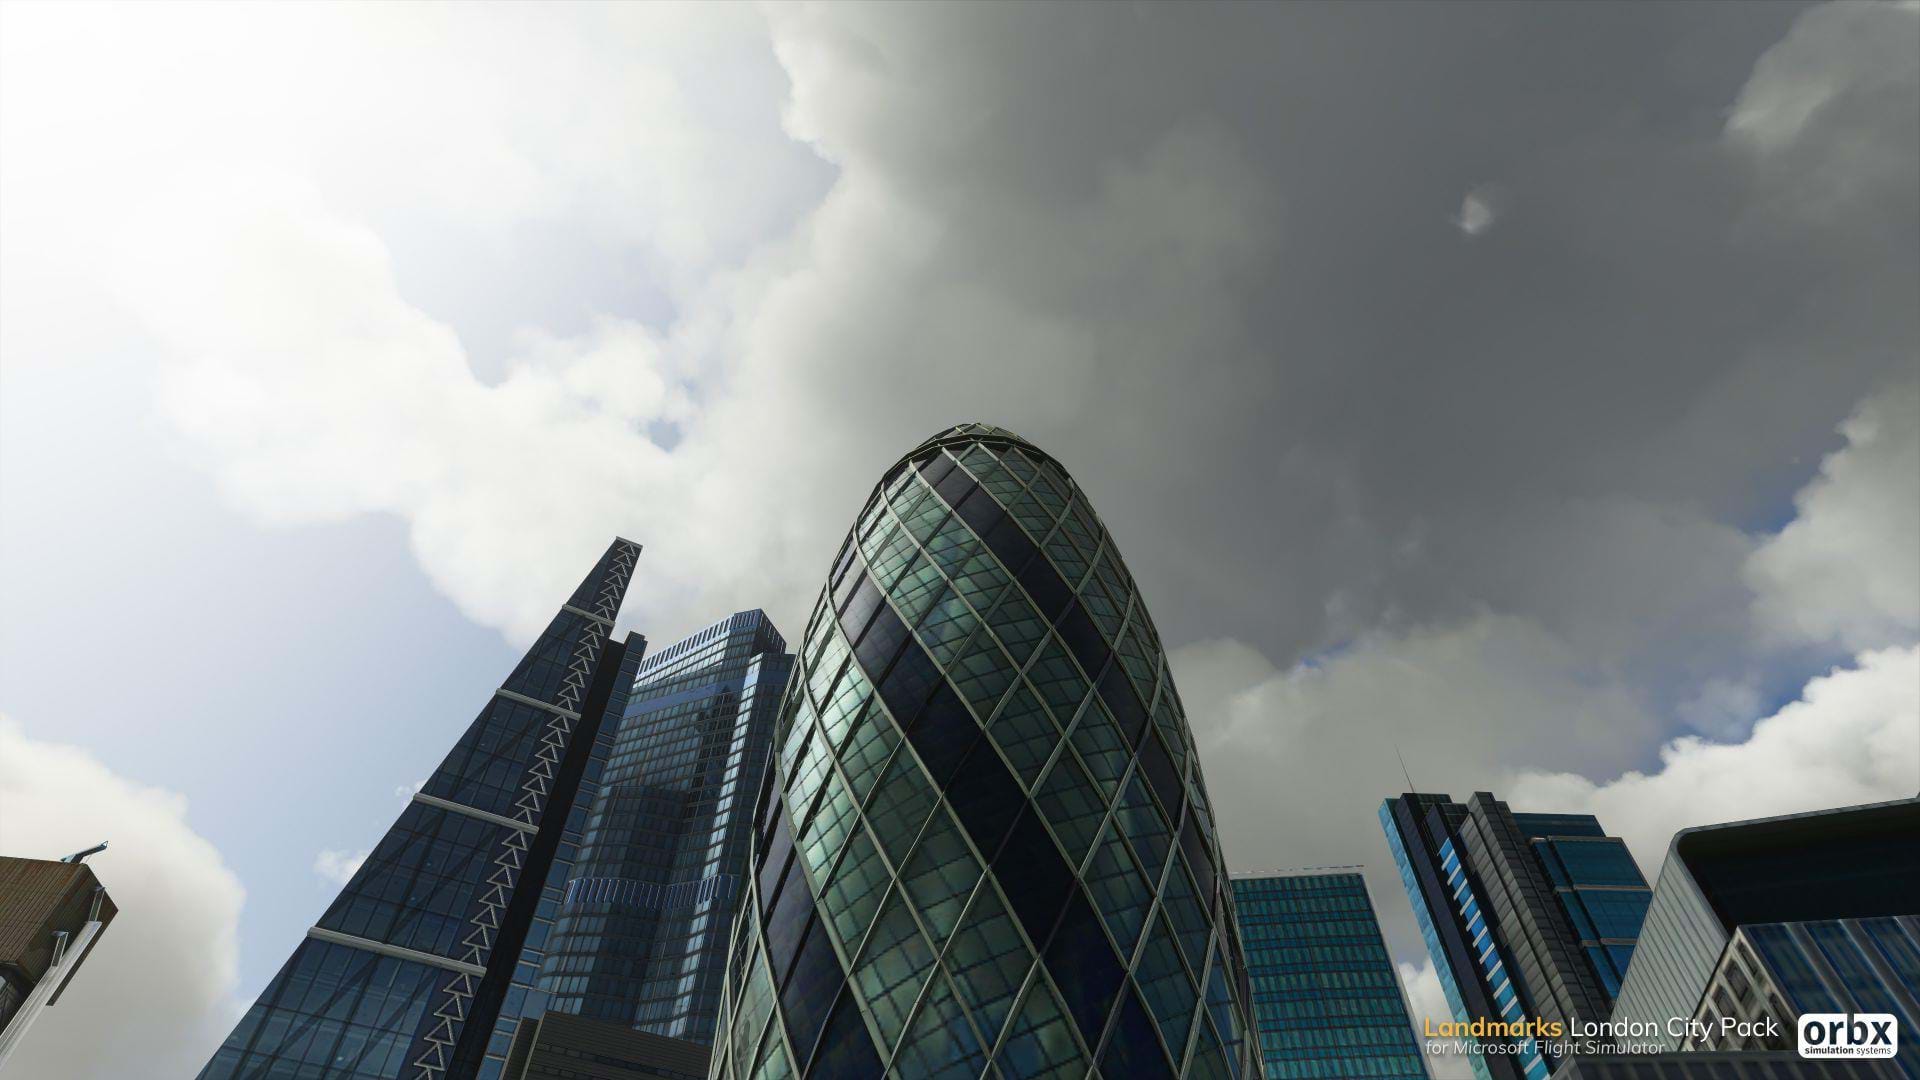 ORBX London Landmark Pack for Microsoft Flight Simulator